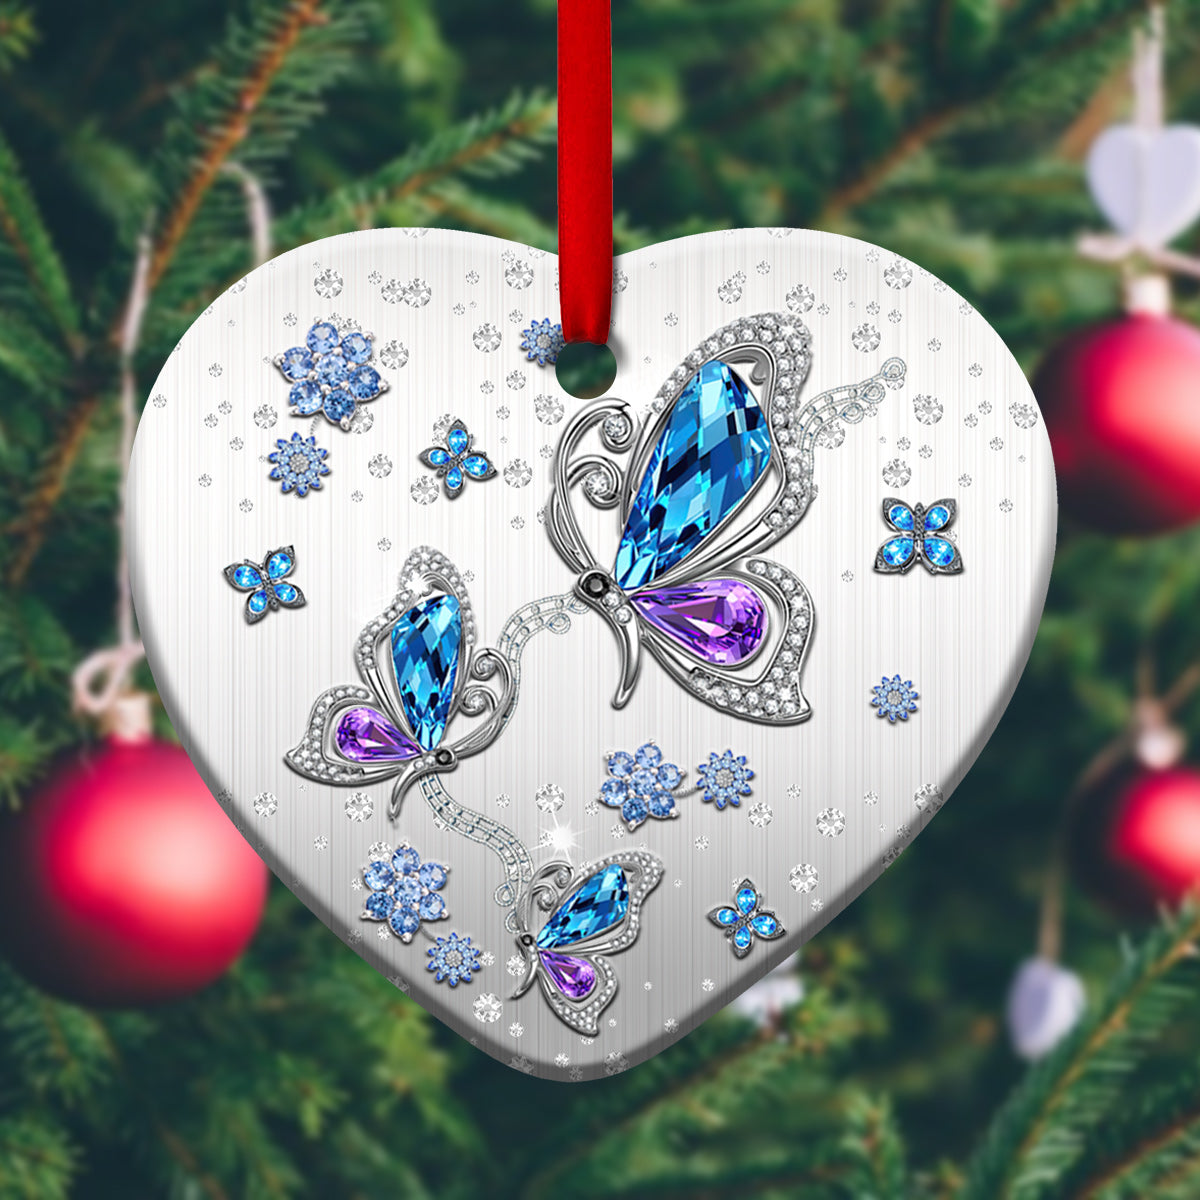 Butterfly Jewelry So Beautiful - Heart Ornament - Owls Matrix LTD